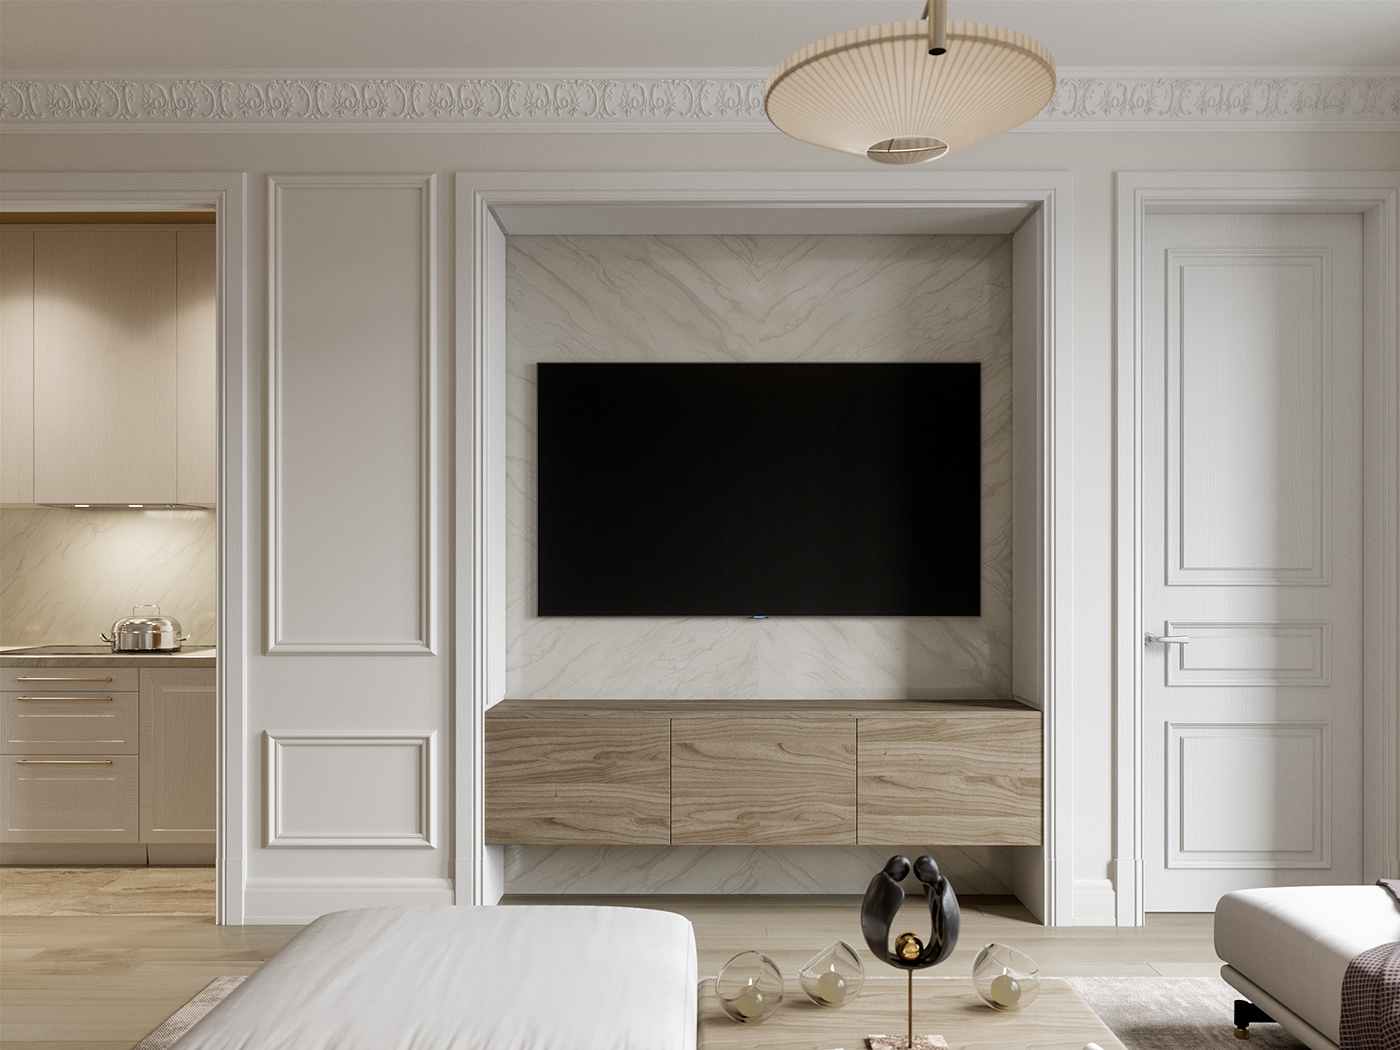 visualisation CG 3D design Interior визуализация проект интерьер Кухня гостиная cozy